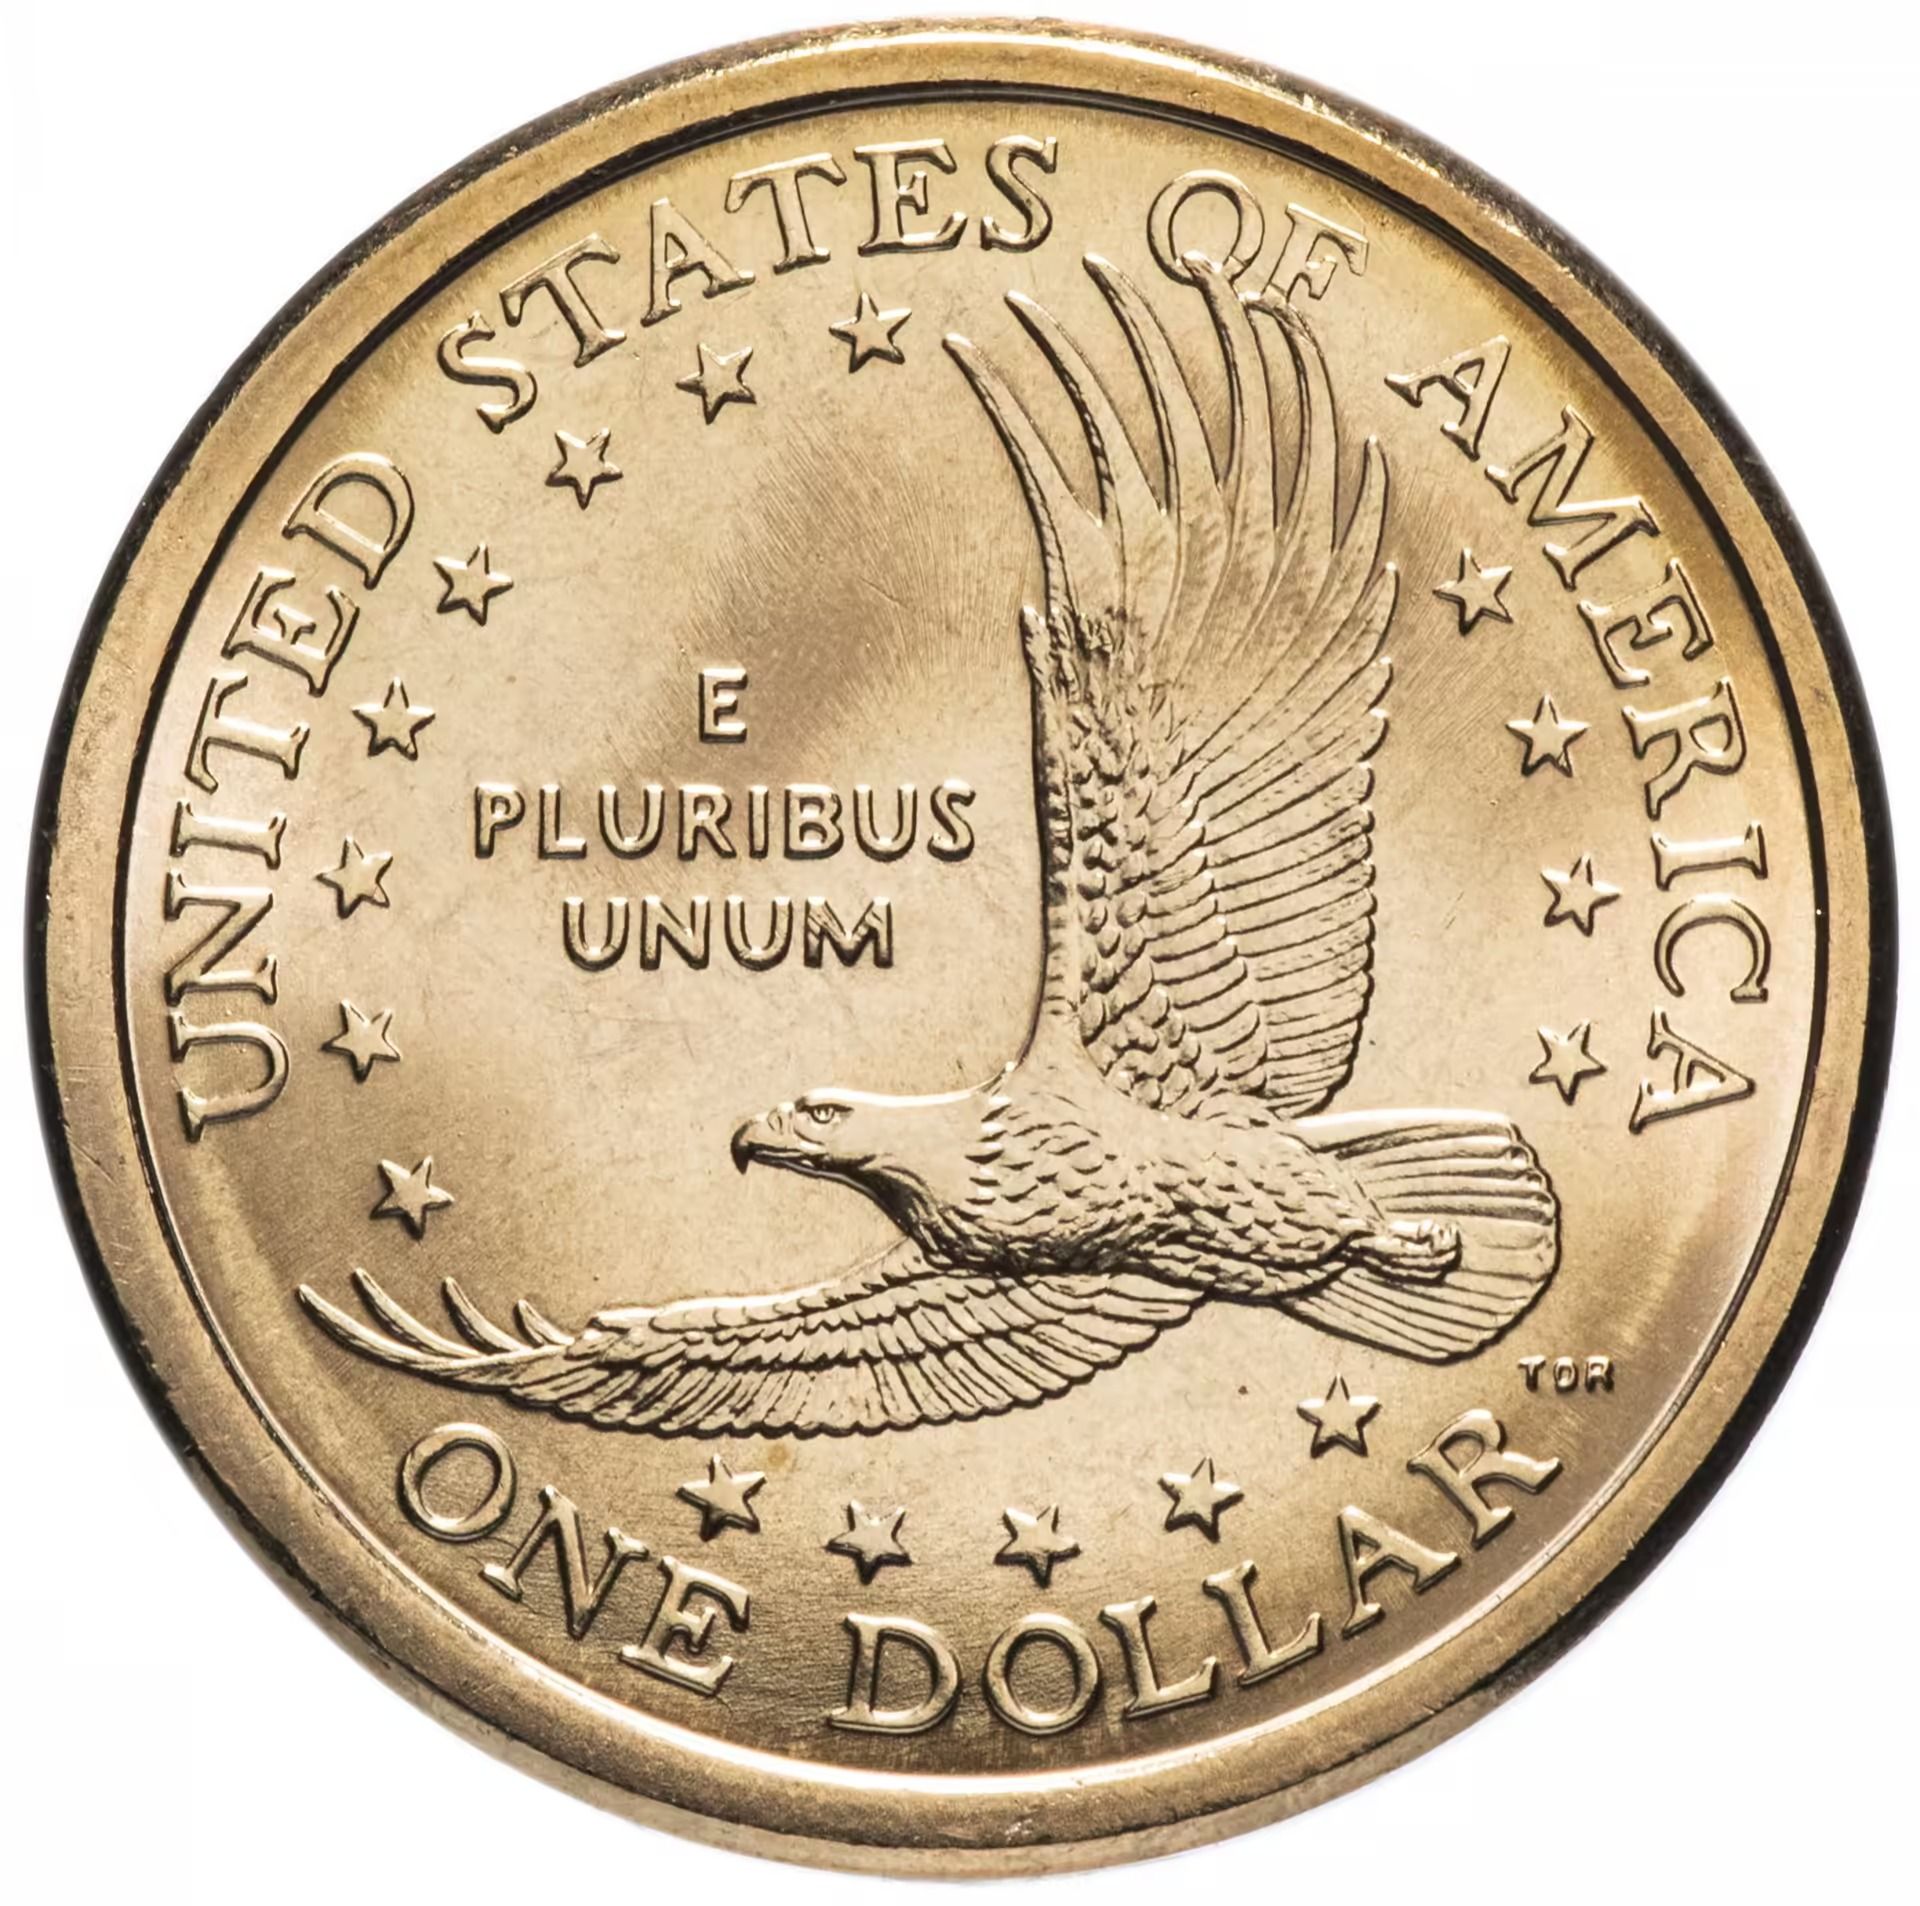 Номинал 1 доллар. Монета 1 доллар США. 1 Доллар Сакагавея. Монета 1 доллар Сакагавея 2000. США 1 доллар 2008 Сакагавея.